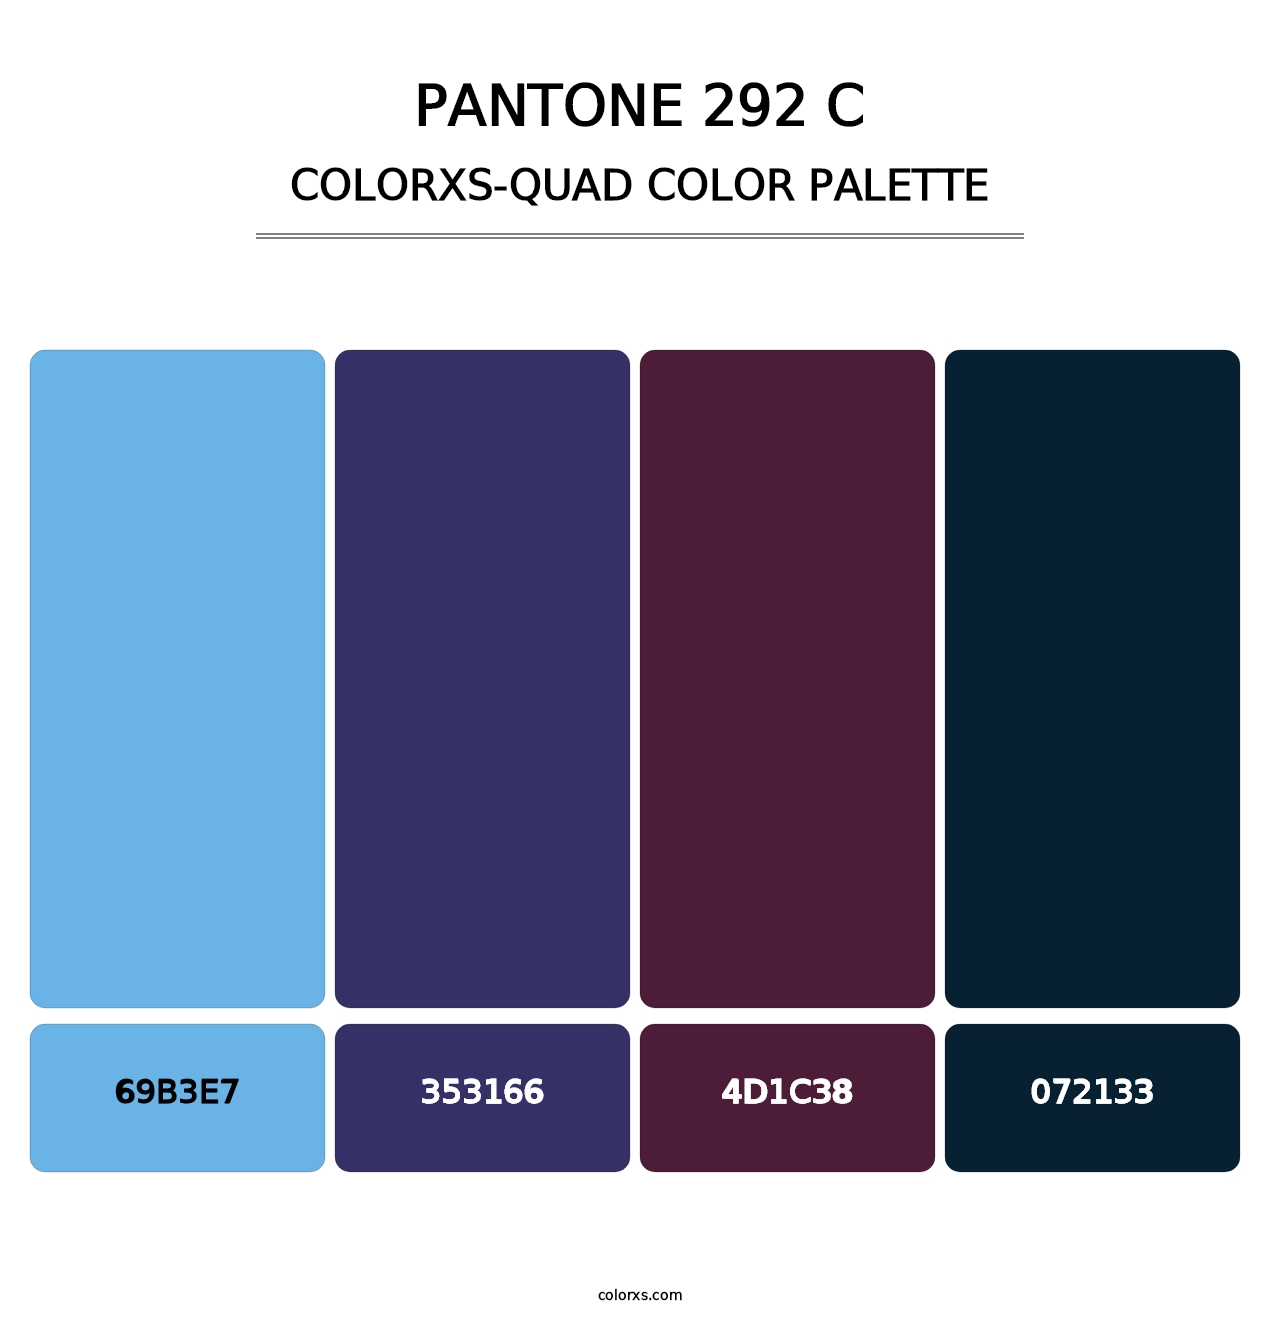 PANTONE 292 C - Colorxs Quad Palette